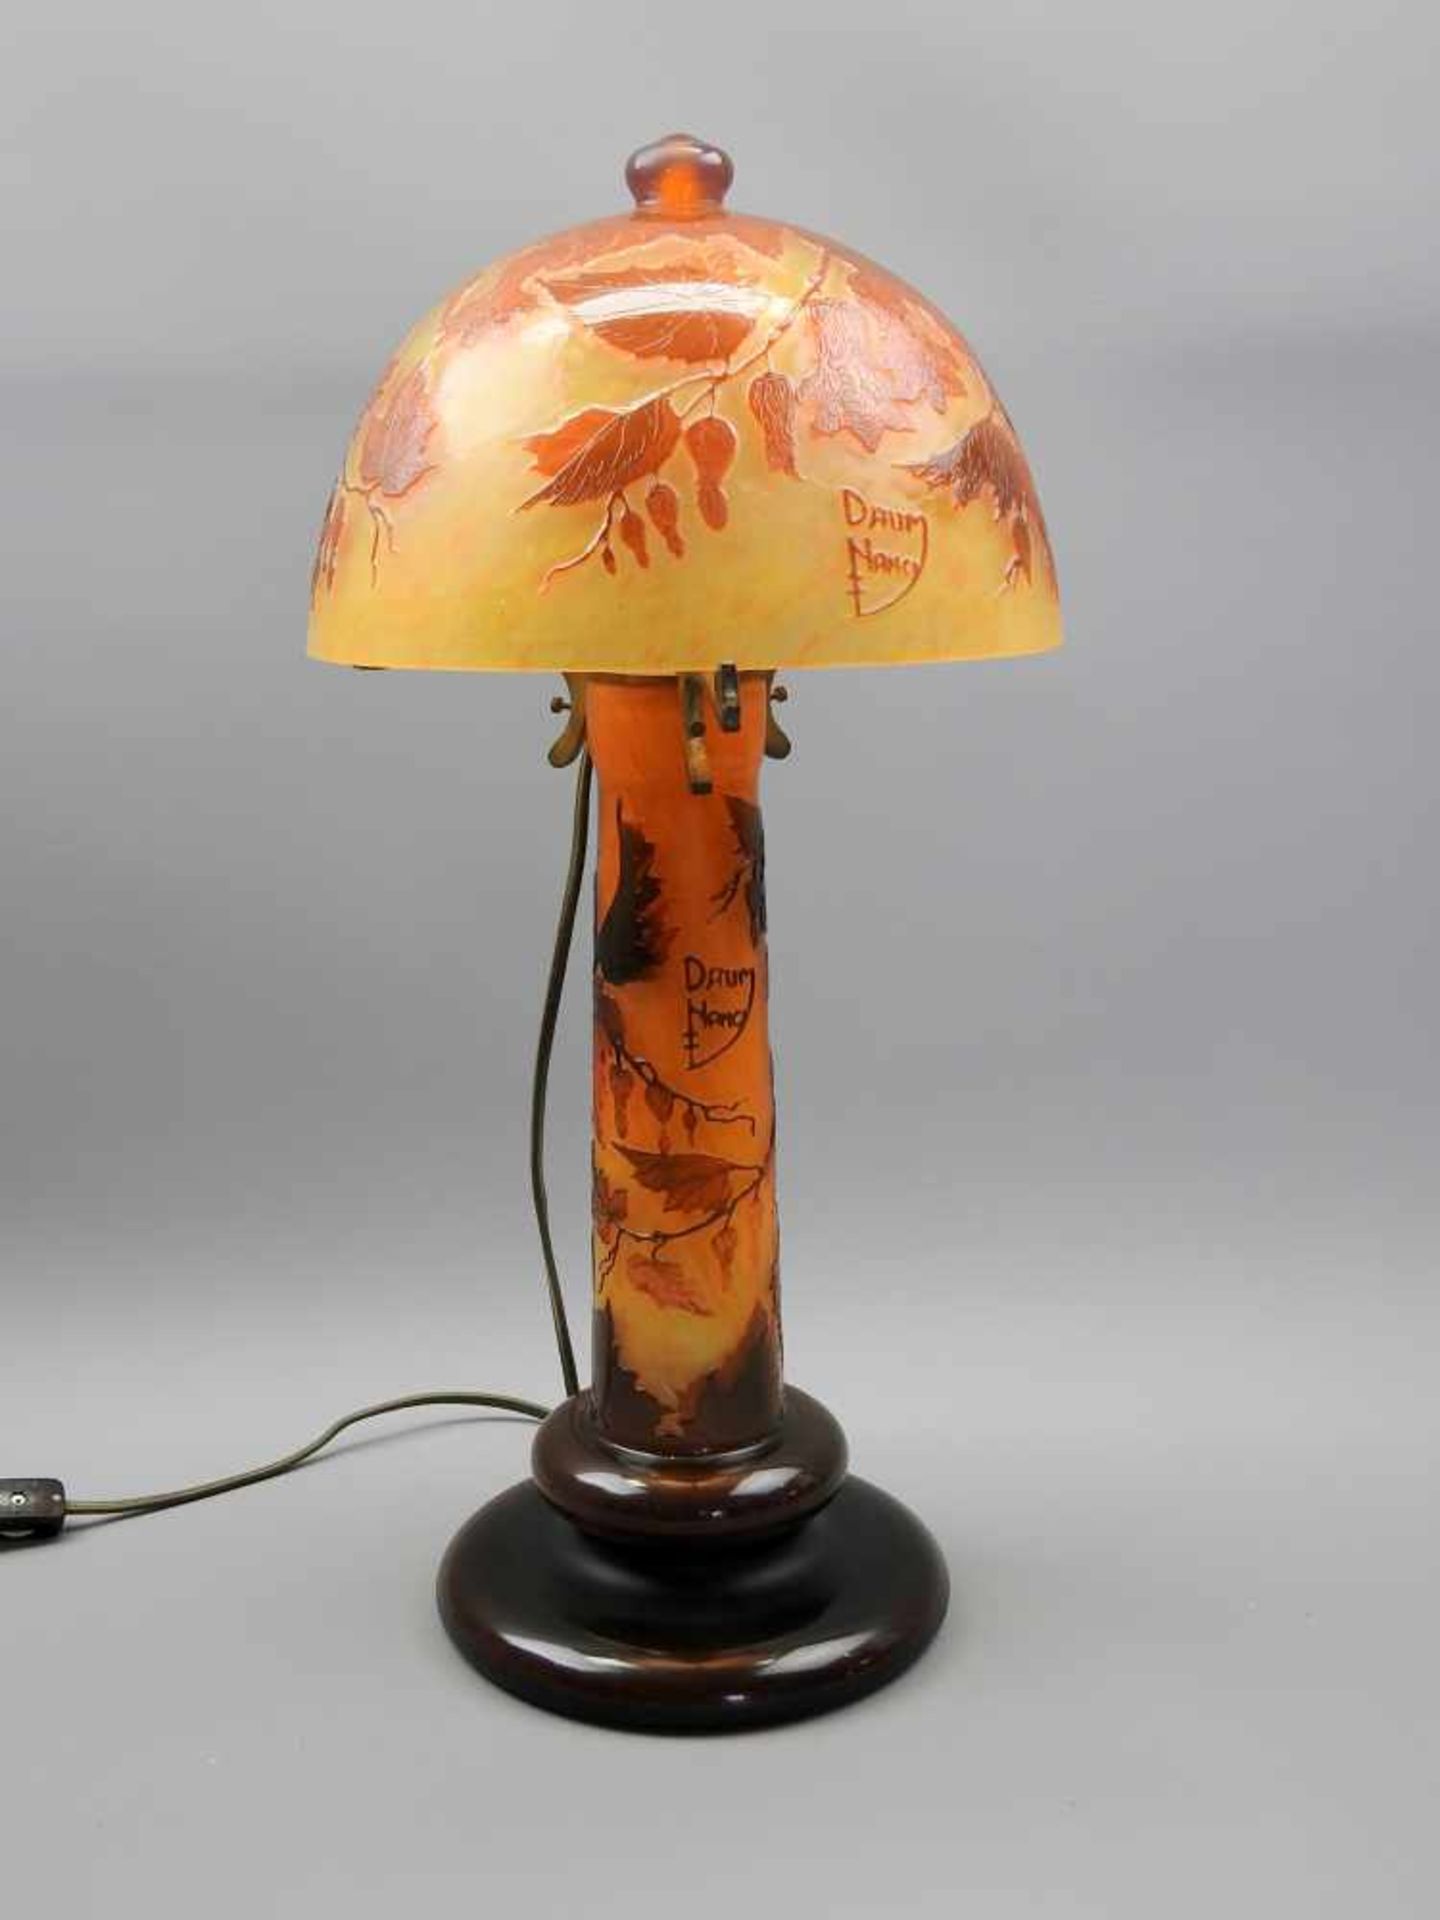 Daum Nancy, "Lampe Champignon"Pilzlampe aus mehrschichtigem, orangefarbenem Glas mit reliefiertem